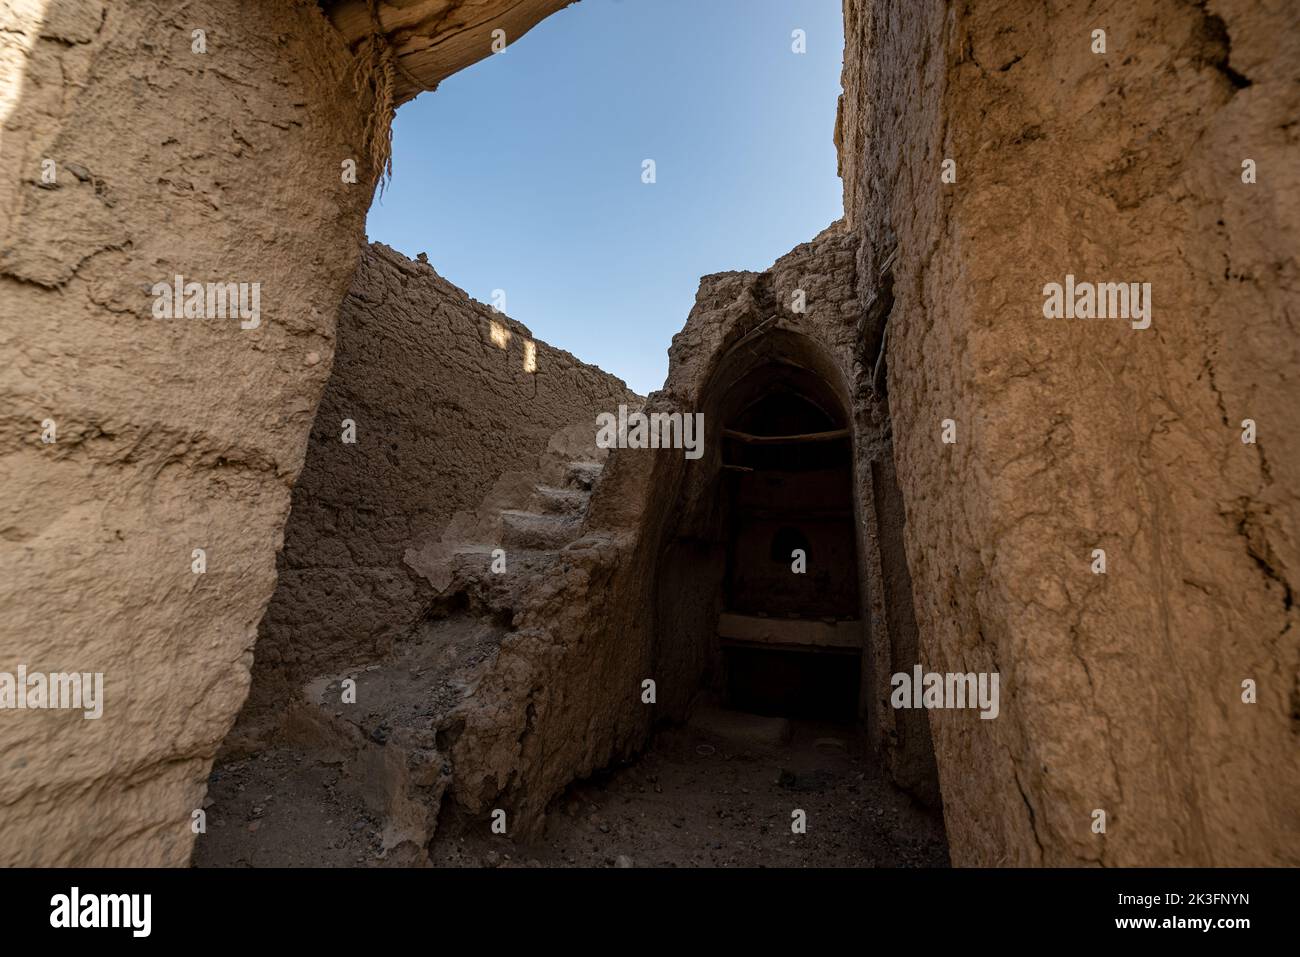 Forteresse de Bahla en brique de boue et oasis sur la pourriture, Oman Banque D'Images